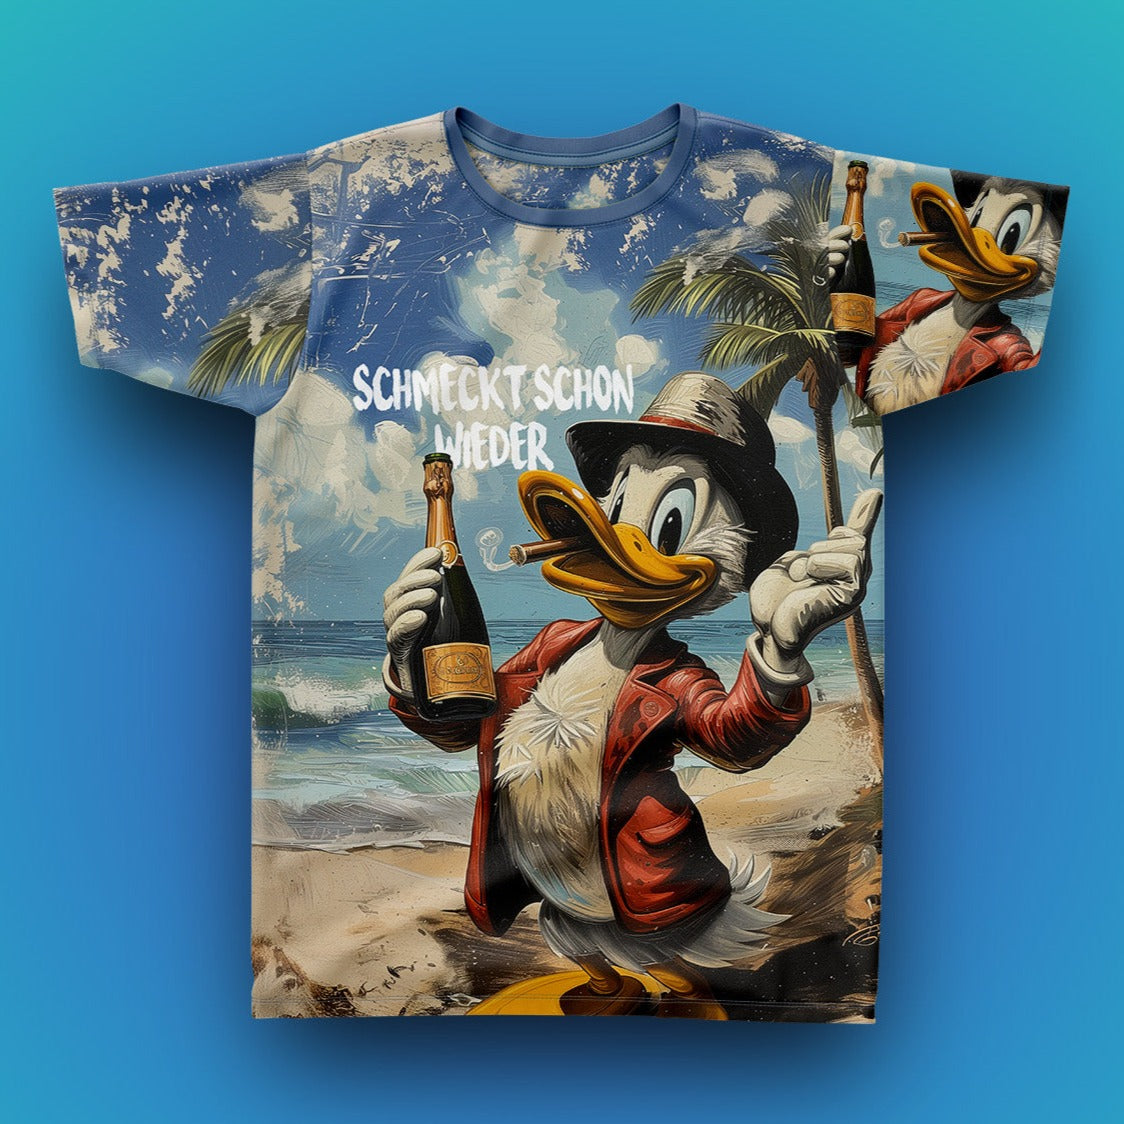 SCHMECKT SCHON WIEDER - Fullprint Tshirt